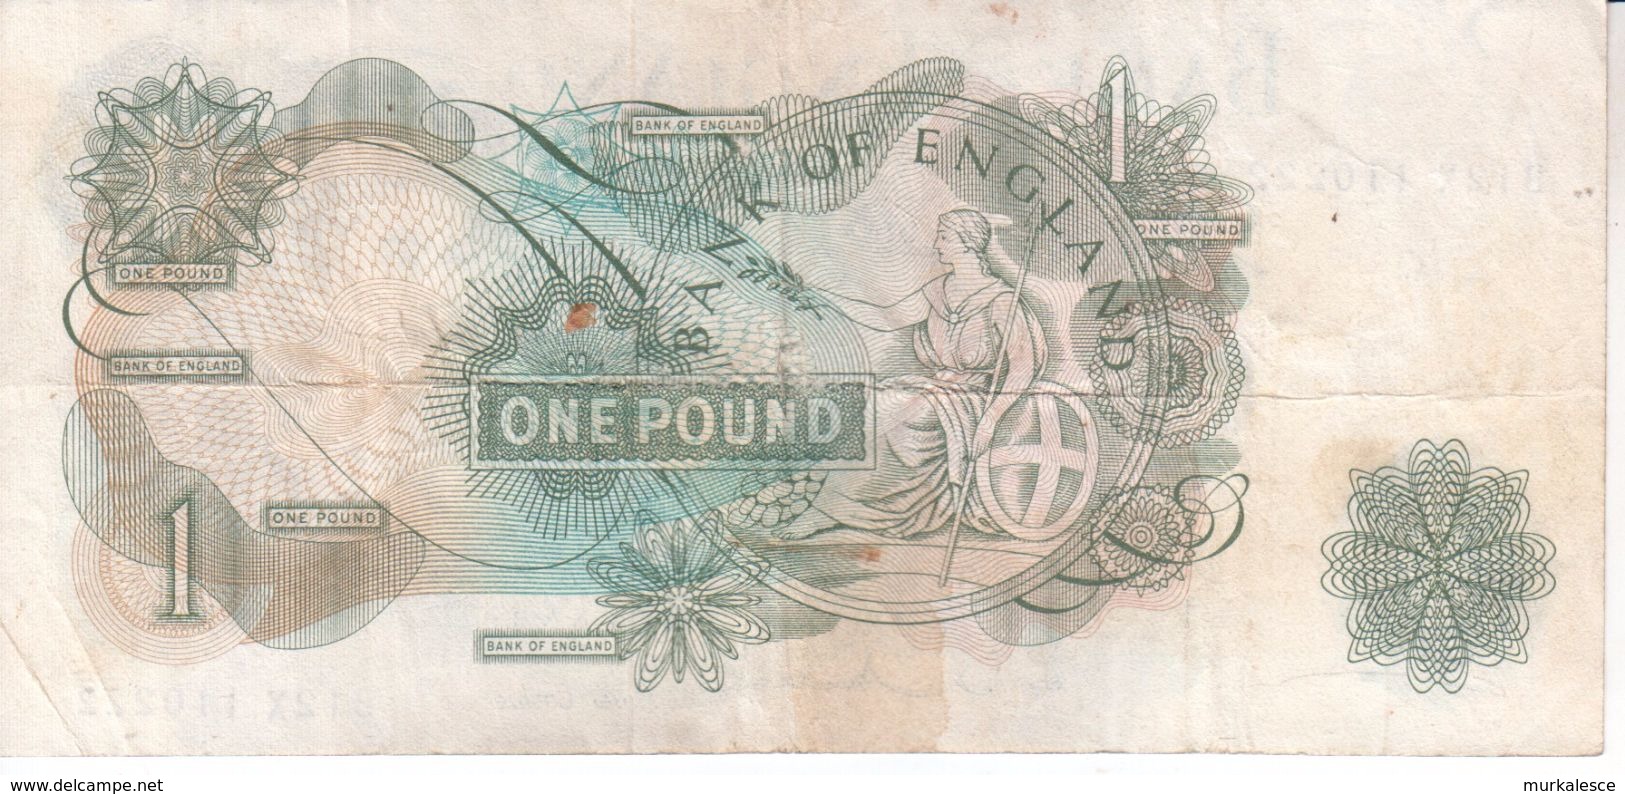 Bank Of England Einen Pound   Banknote In Gebrauchtem  BL2X - 1 Pond